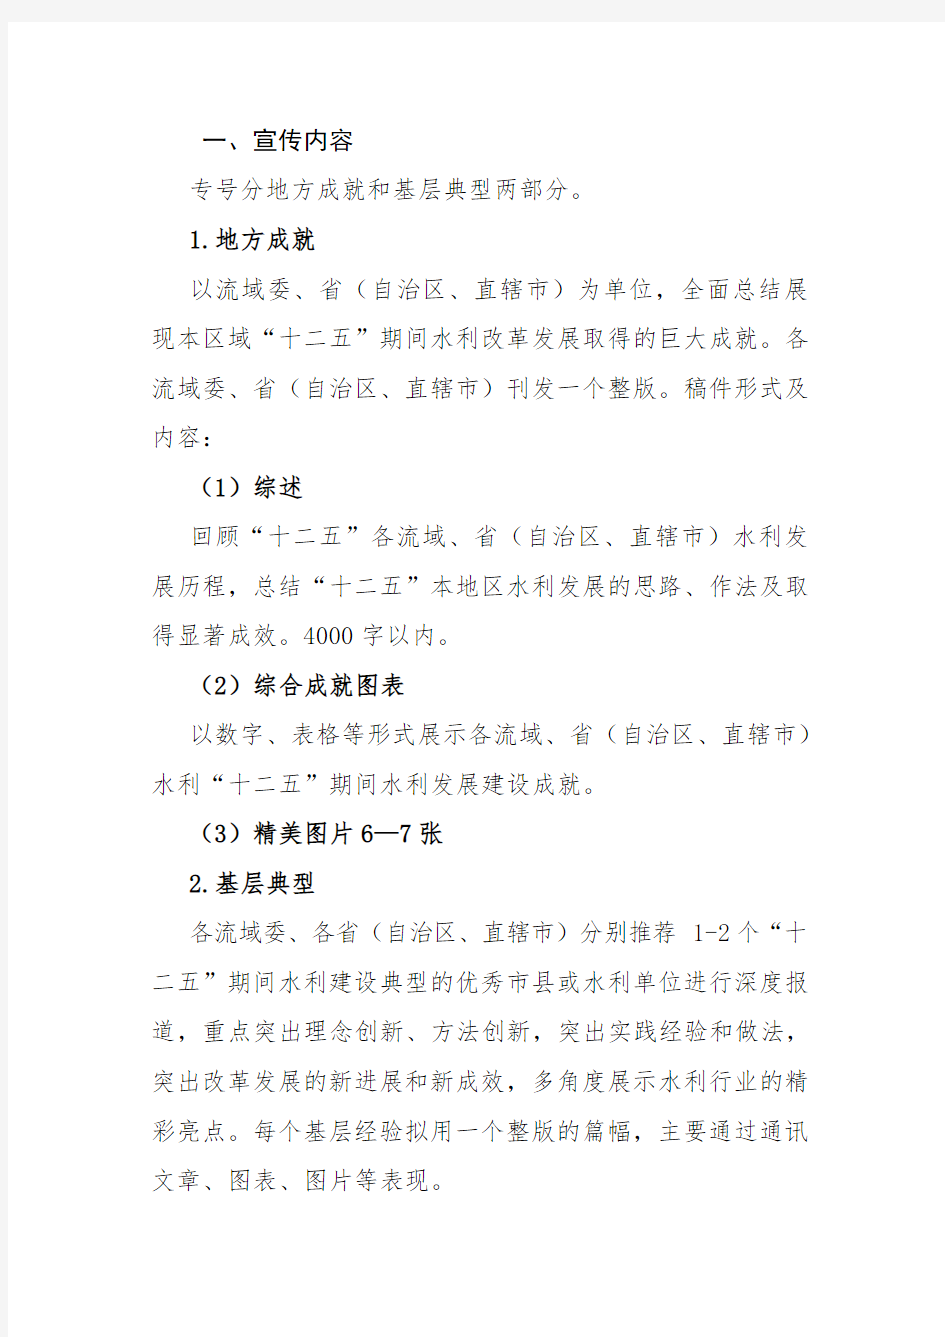 《中国水利报》精彩十二五——水利十二五改革发展